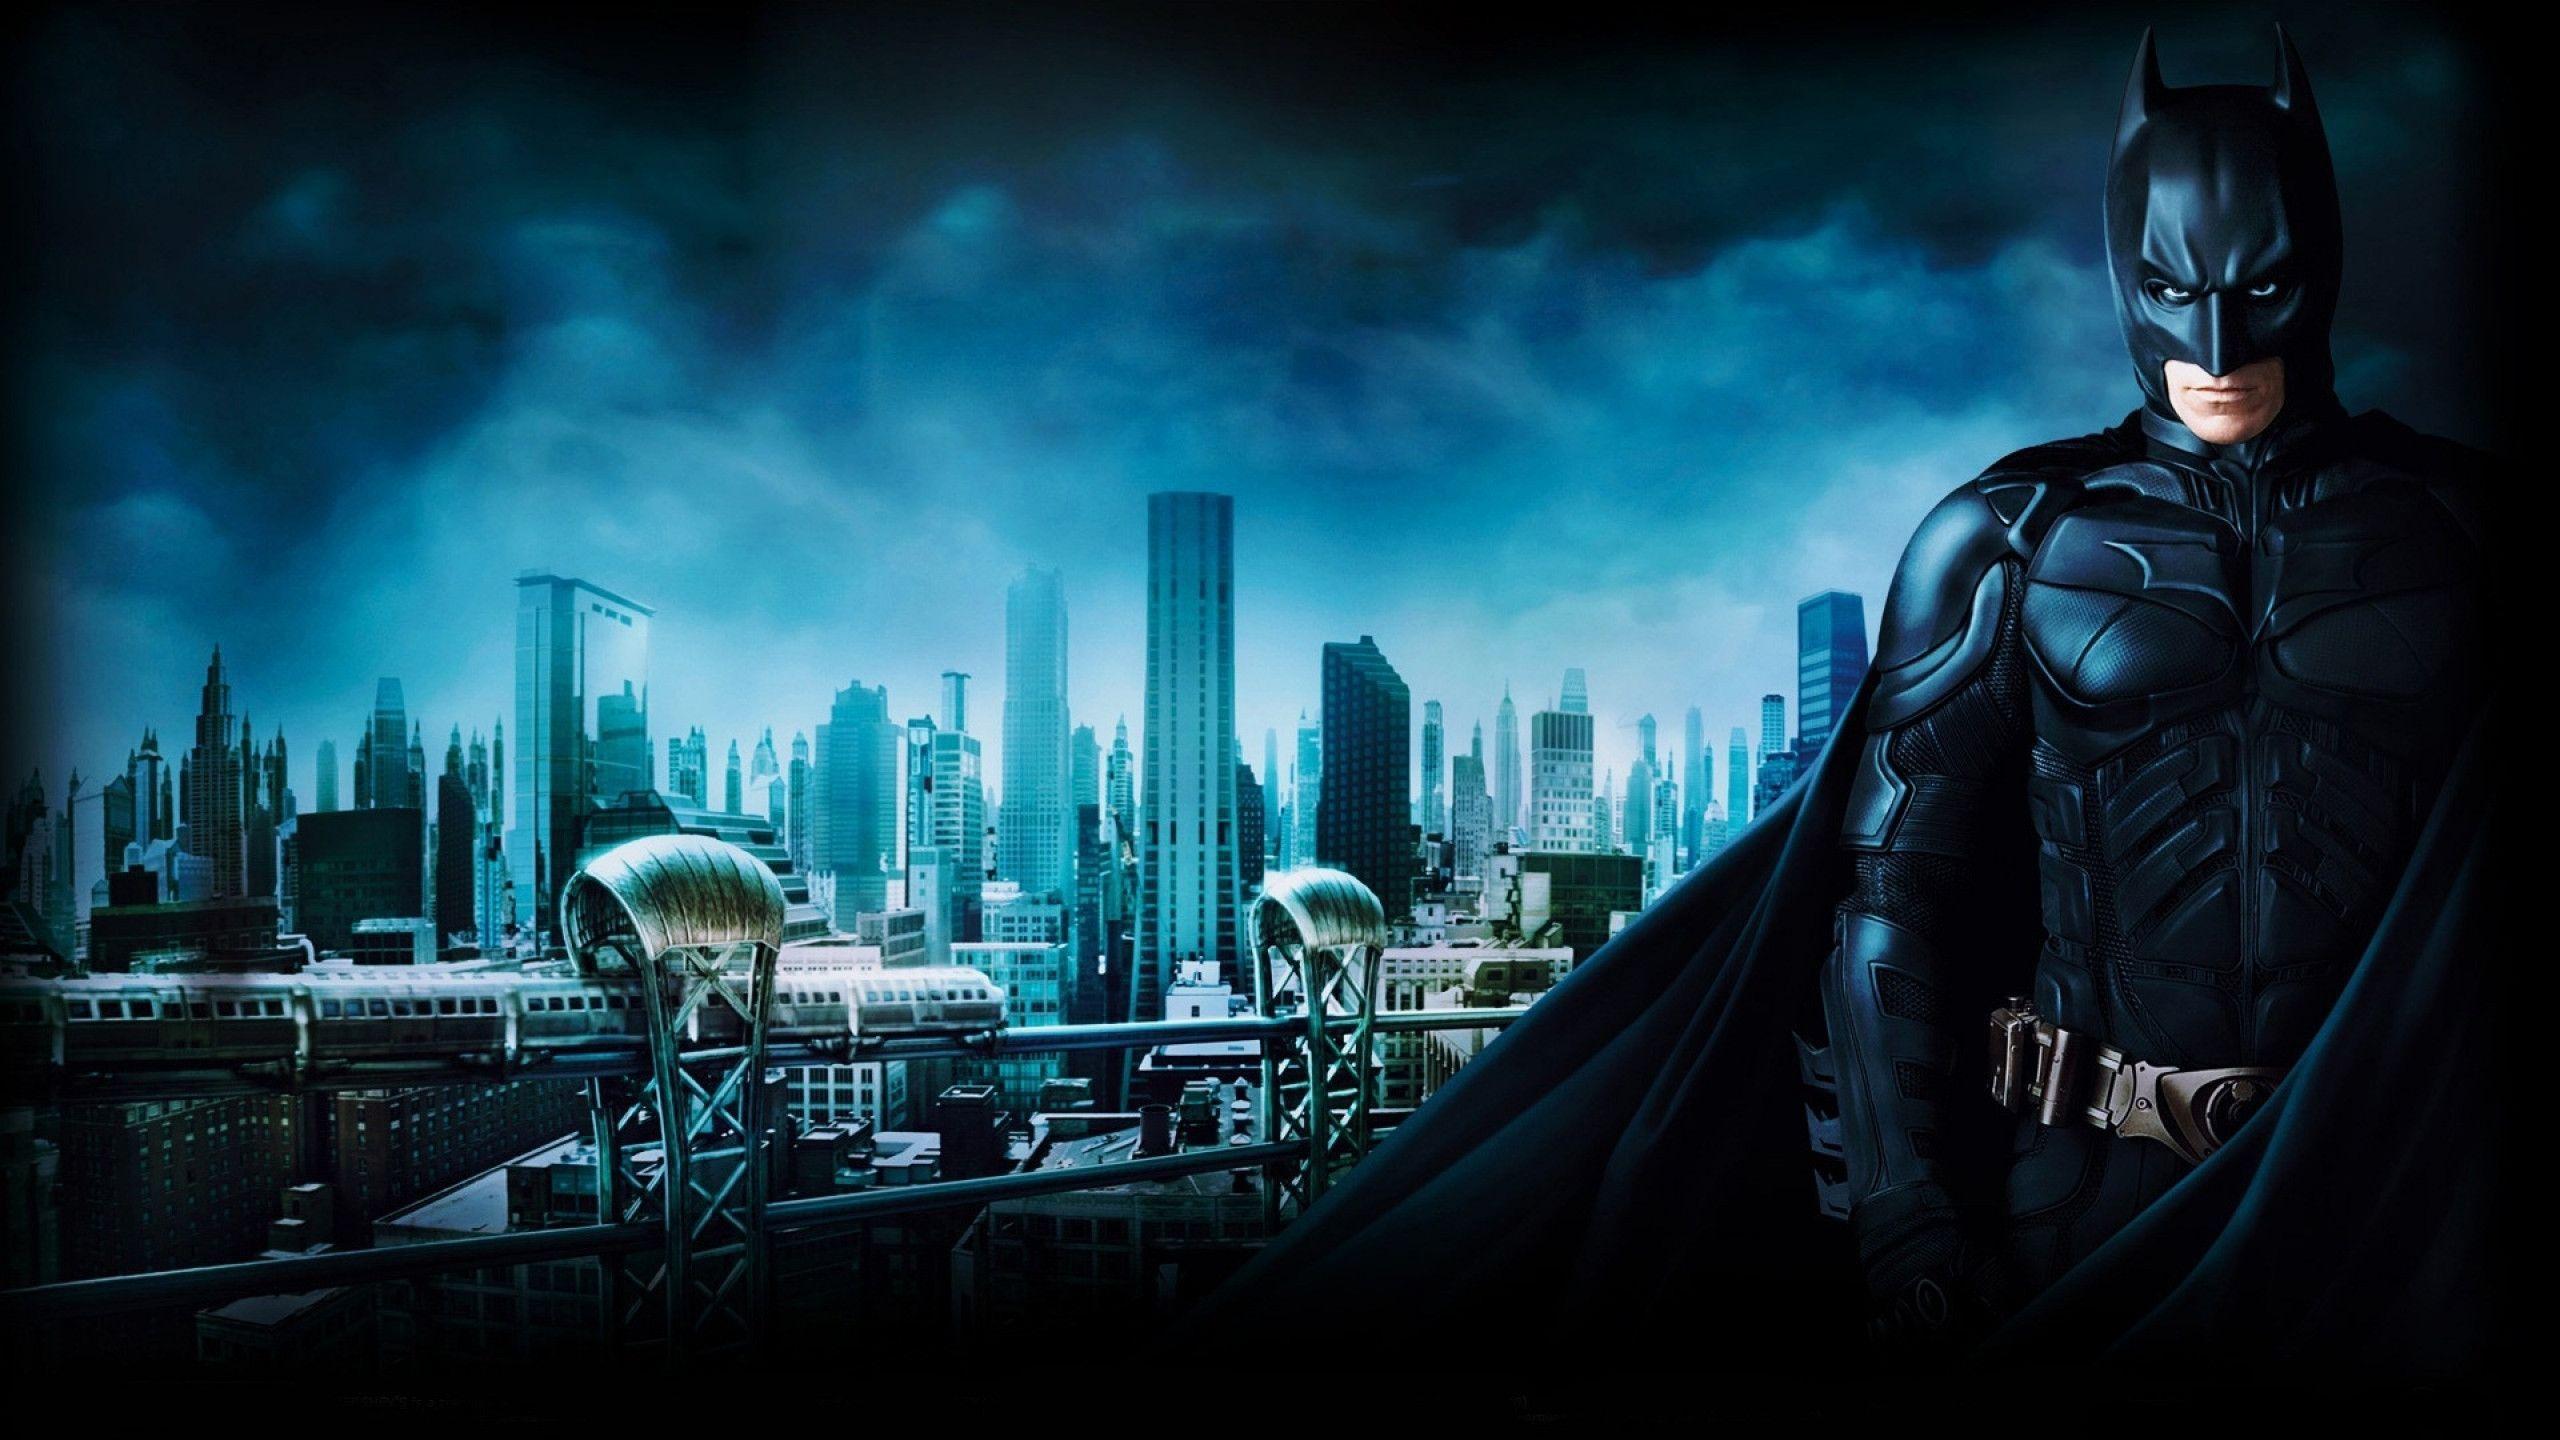 Batman 3 Gotham City Wallpaper for iMac. HD Wallpaper Source